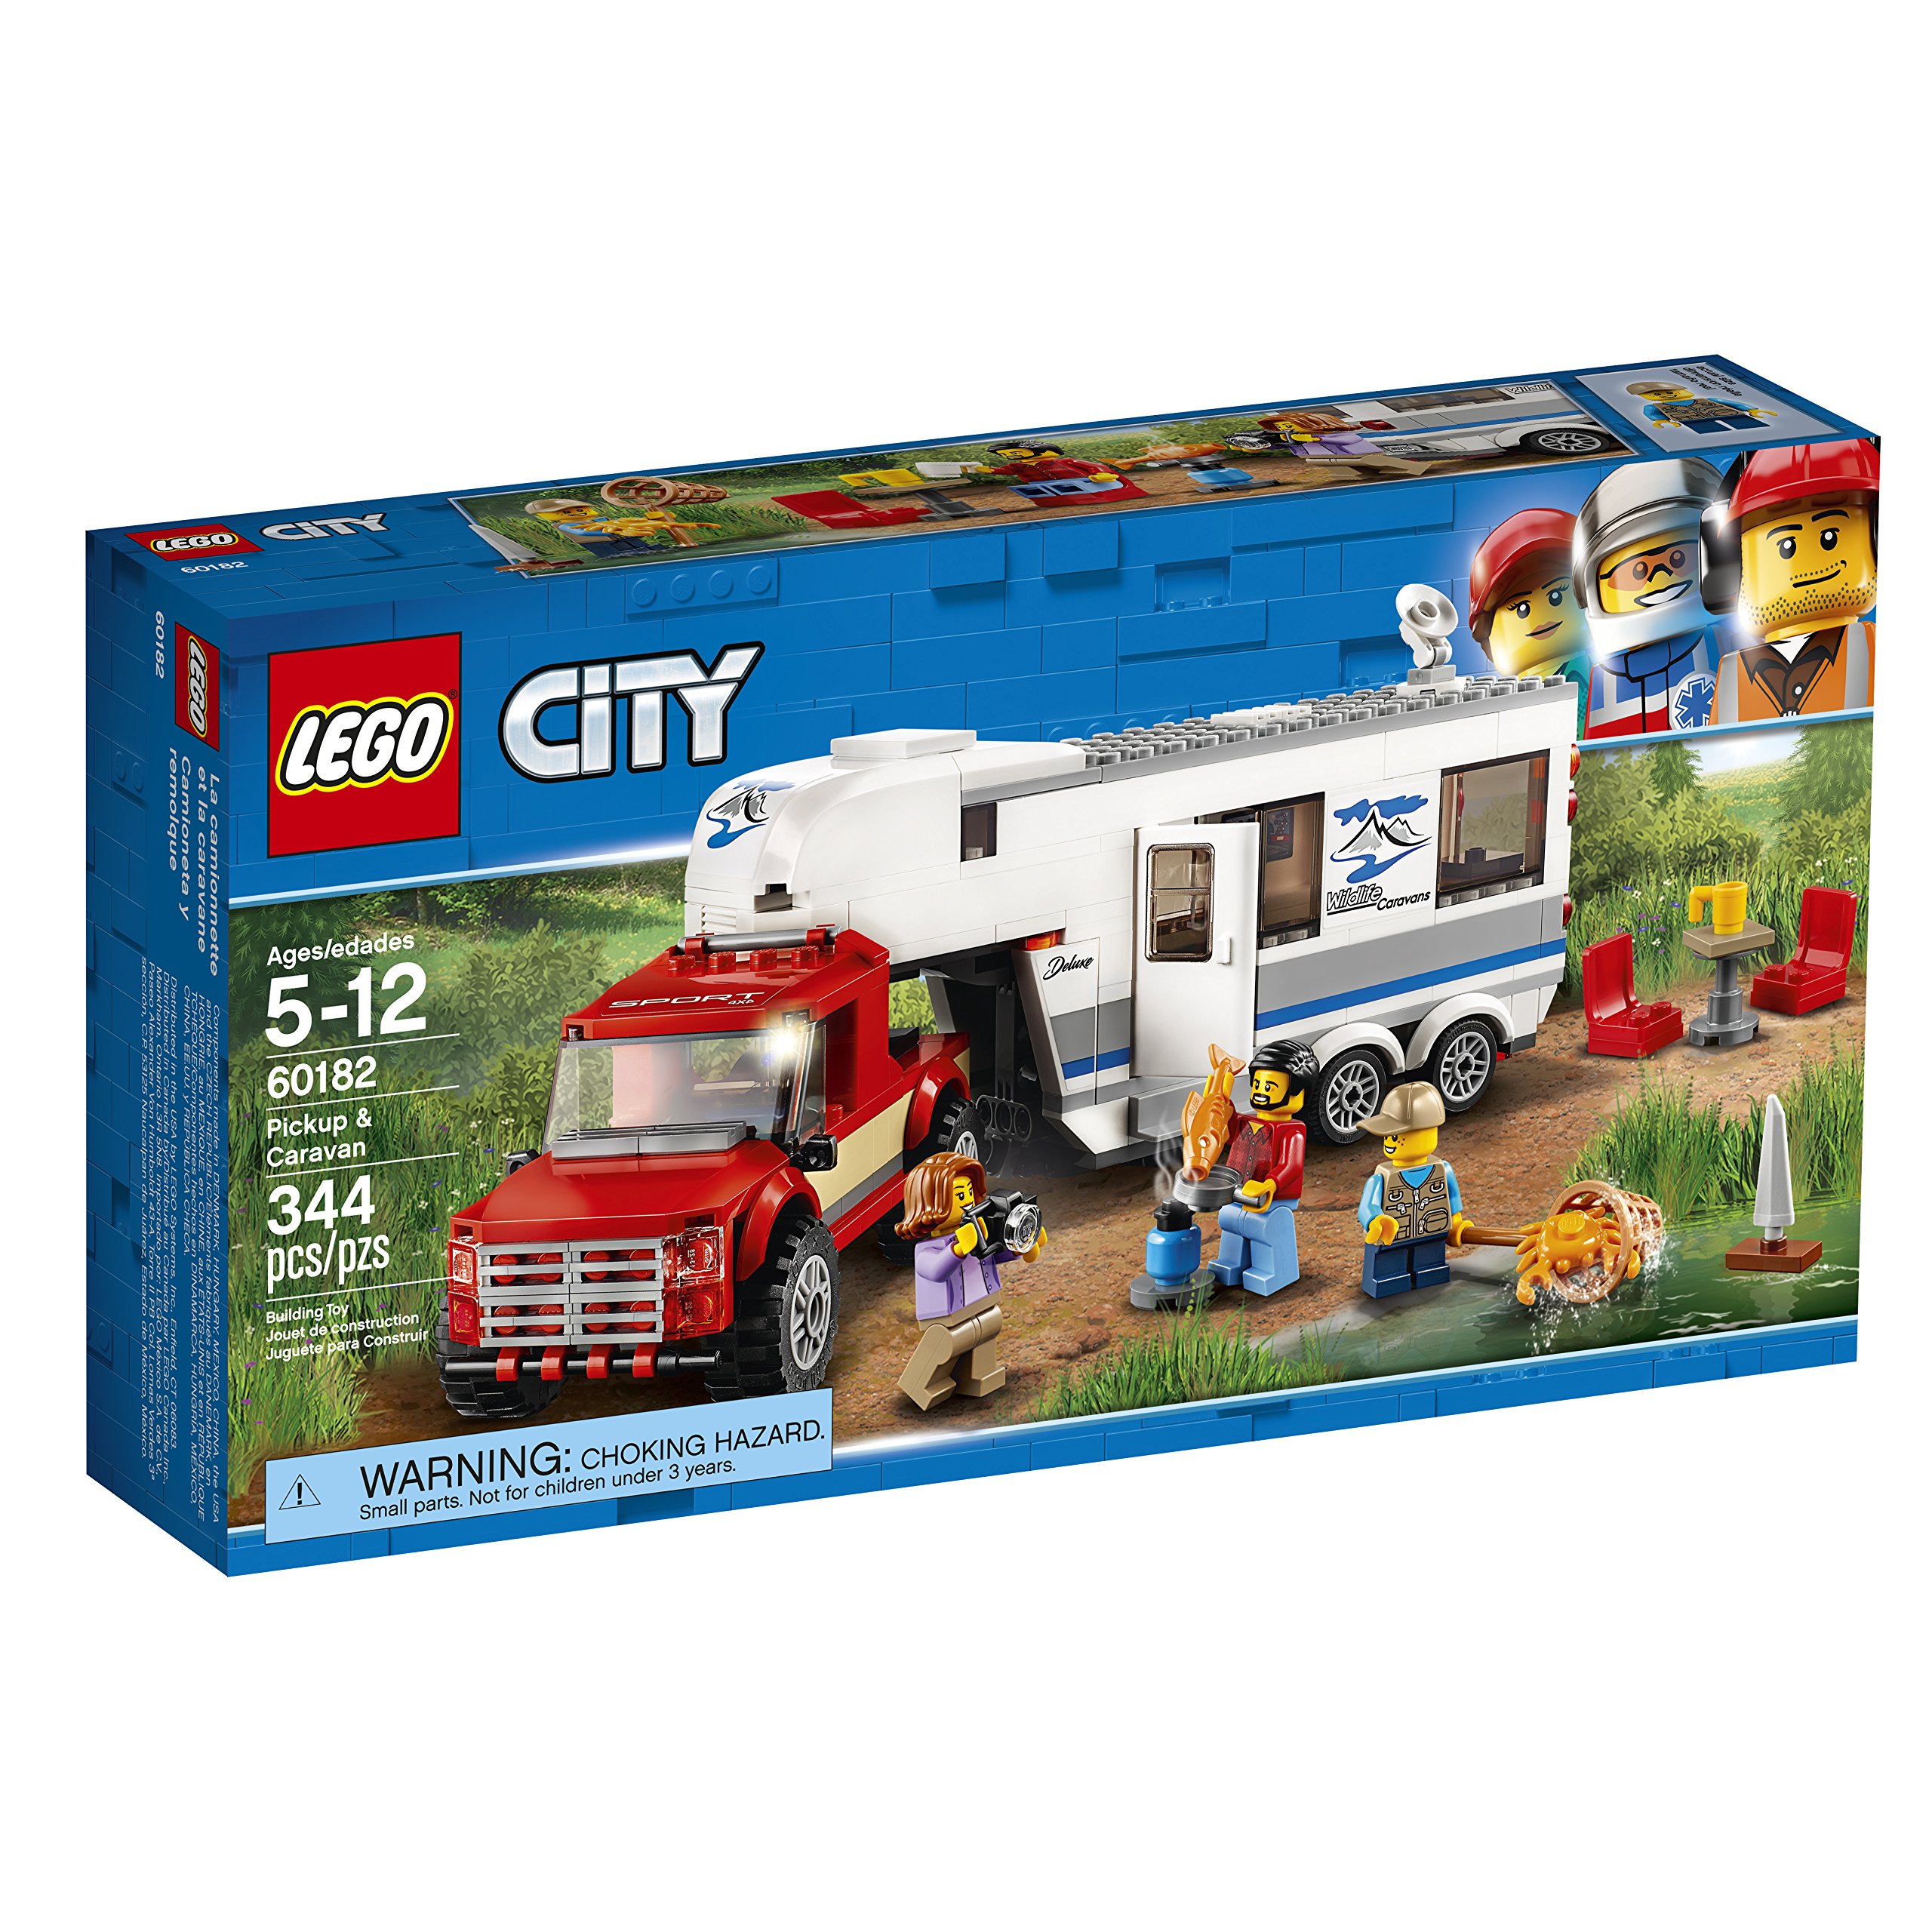 LEGO City Pickup & Caravan 60182 Building Kit (344 Pieces)